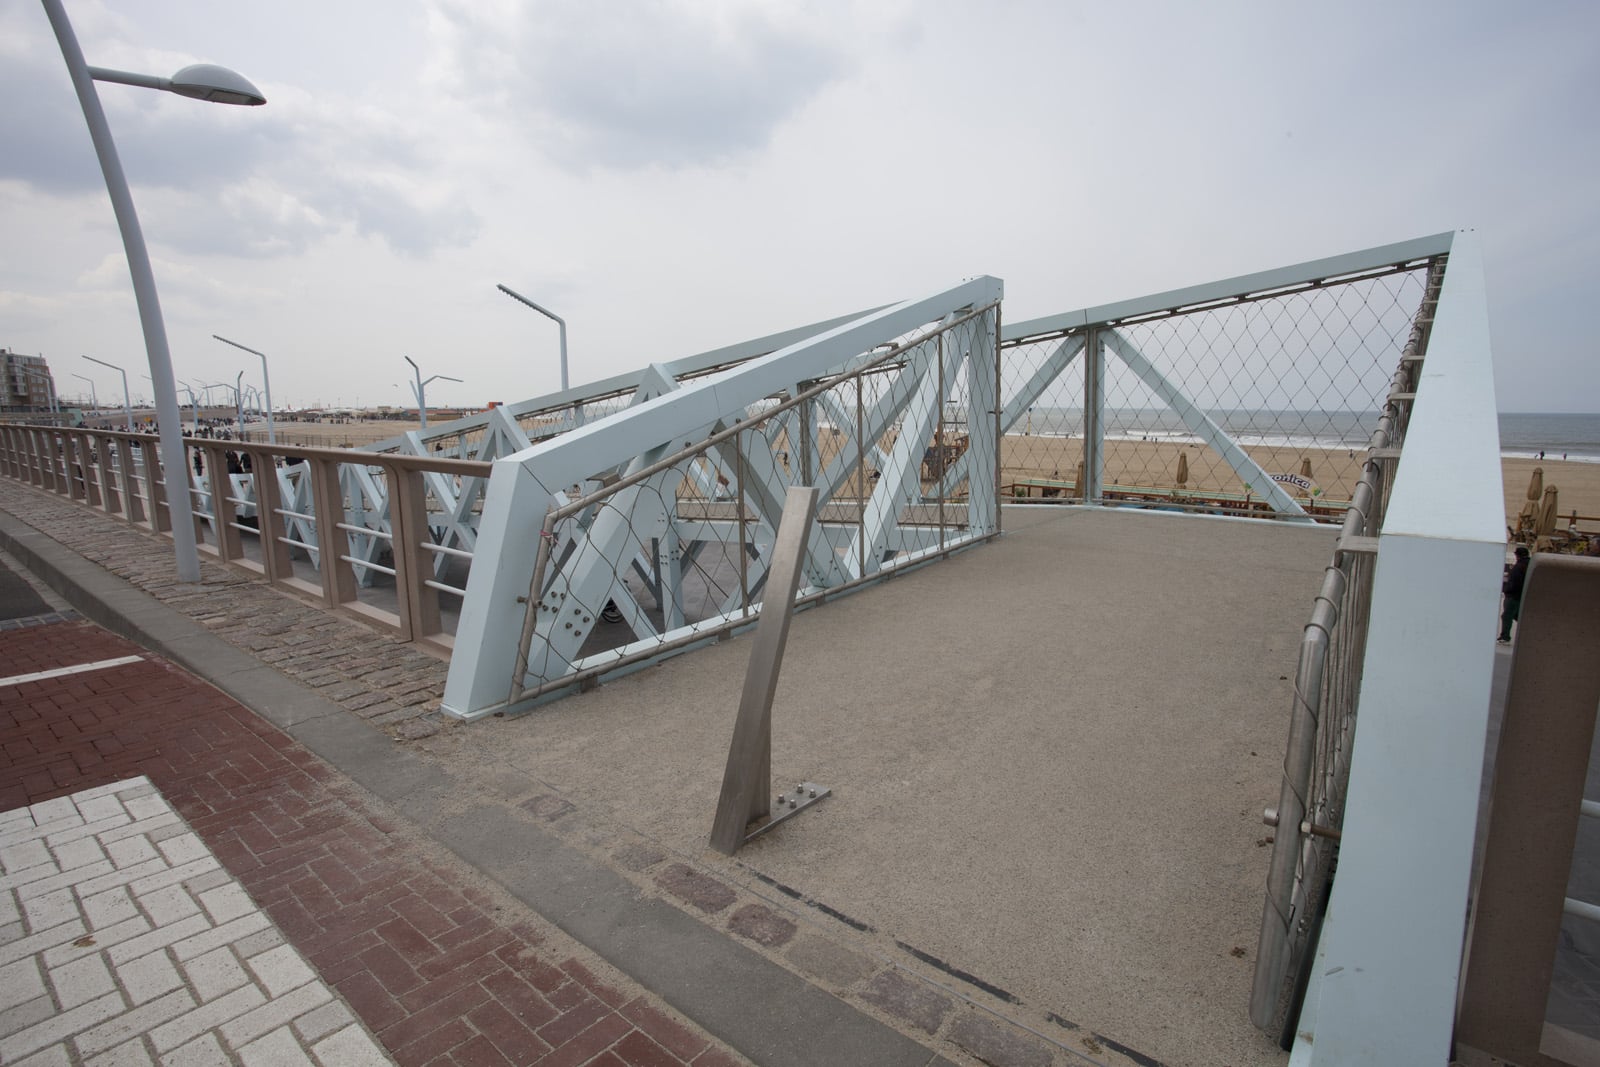 Haasnoot Bruggen bouwt een bijzondere voetgangersbrug voor de nieuwe boulevard in Scheveningen.